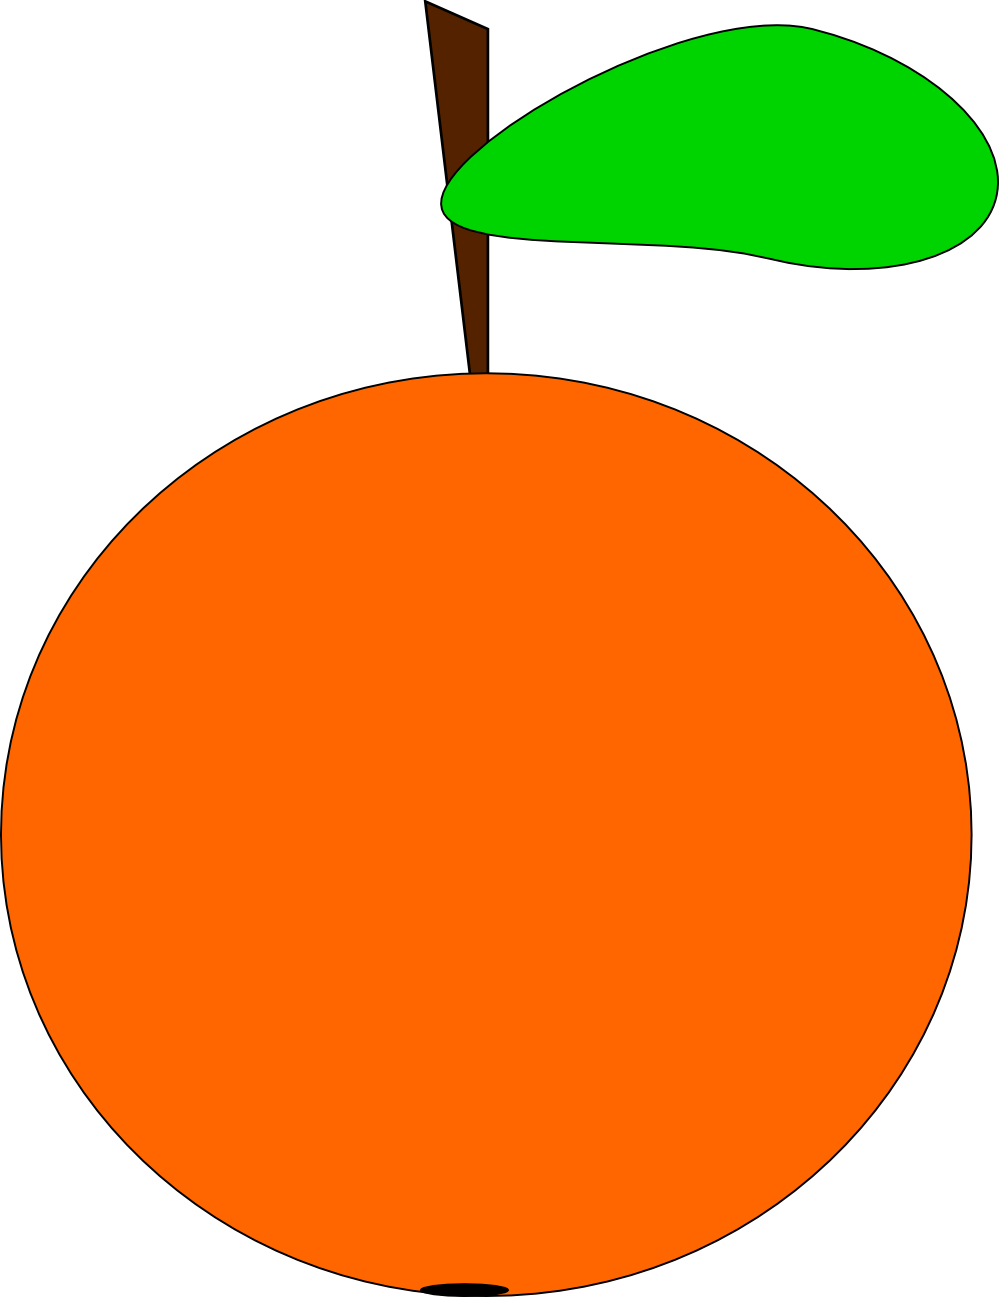 Orange Image PNG Image